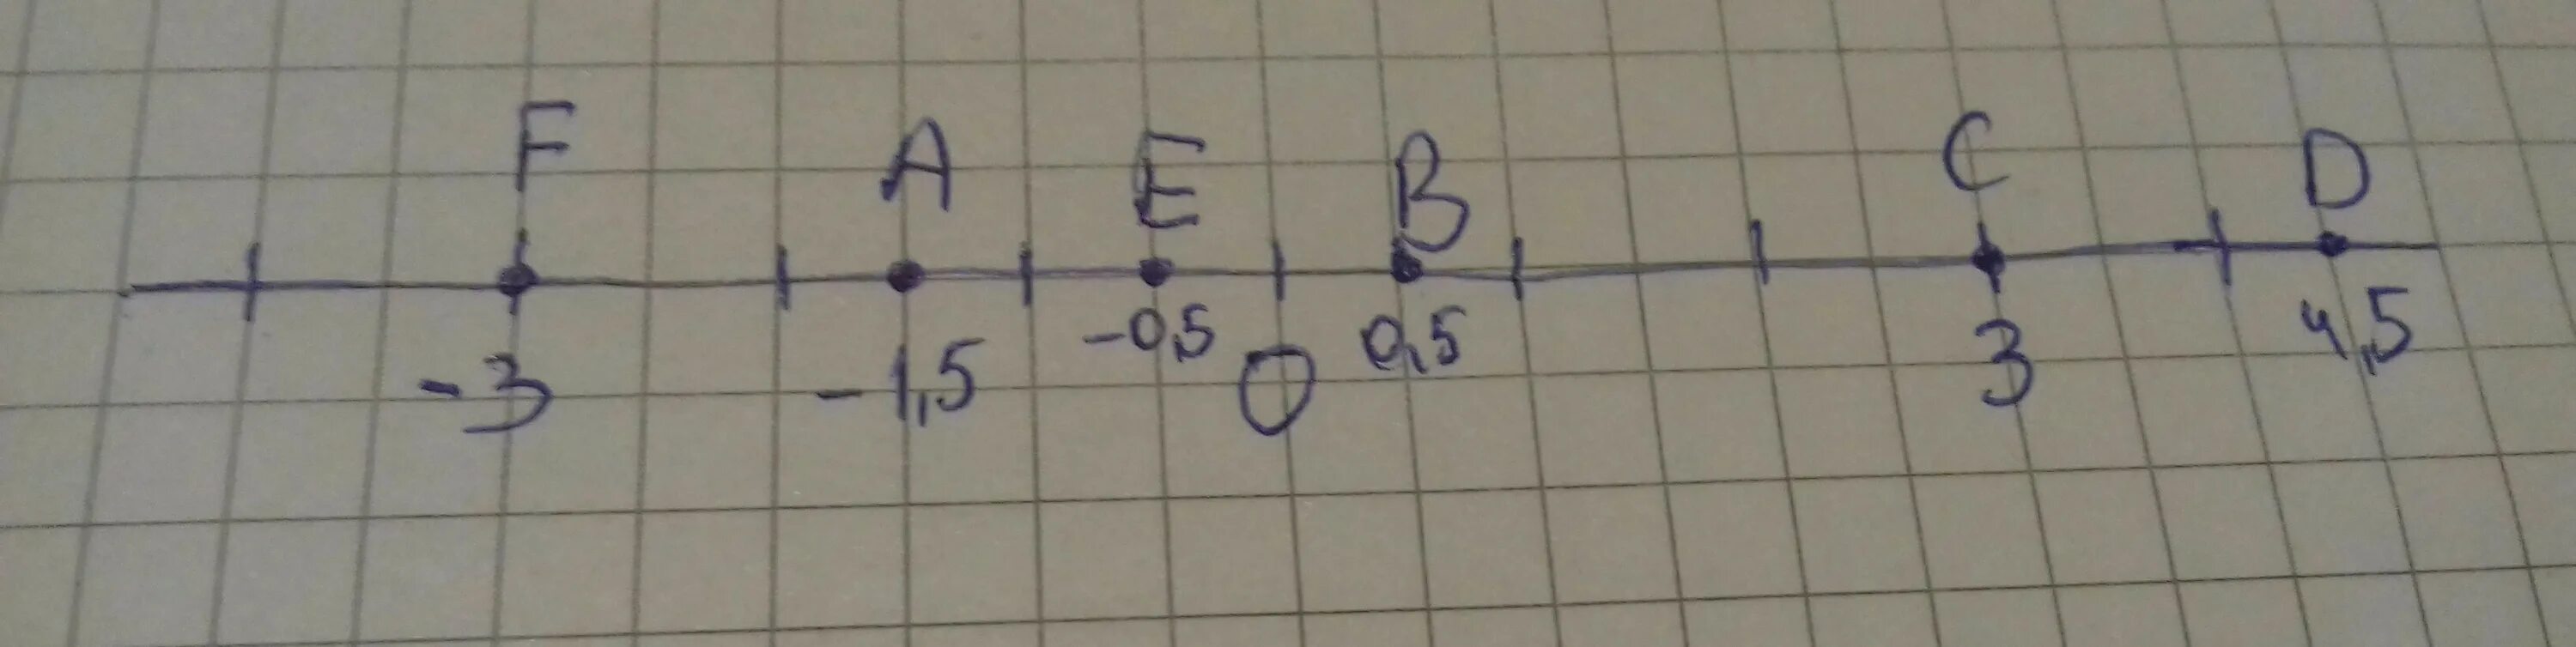 Б минус 3. Начертите координатную прямую приняв за единичный отрезок. Начерти координатную прямую и отметь на ней точки a(0) b-(2). Начертите координатную прямую и отметьте на ней точки а -2,5 в8 к2.5. Начертите координатную прямую и отметьте на ней точки а4 в-5 с0.5 д-0.5.